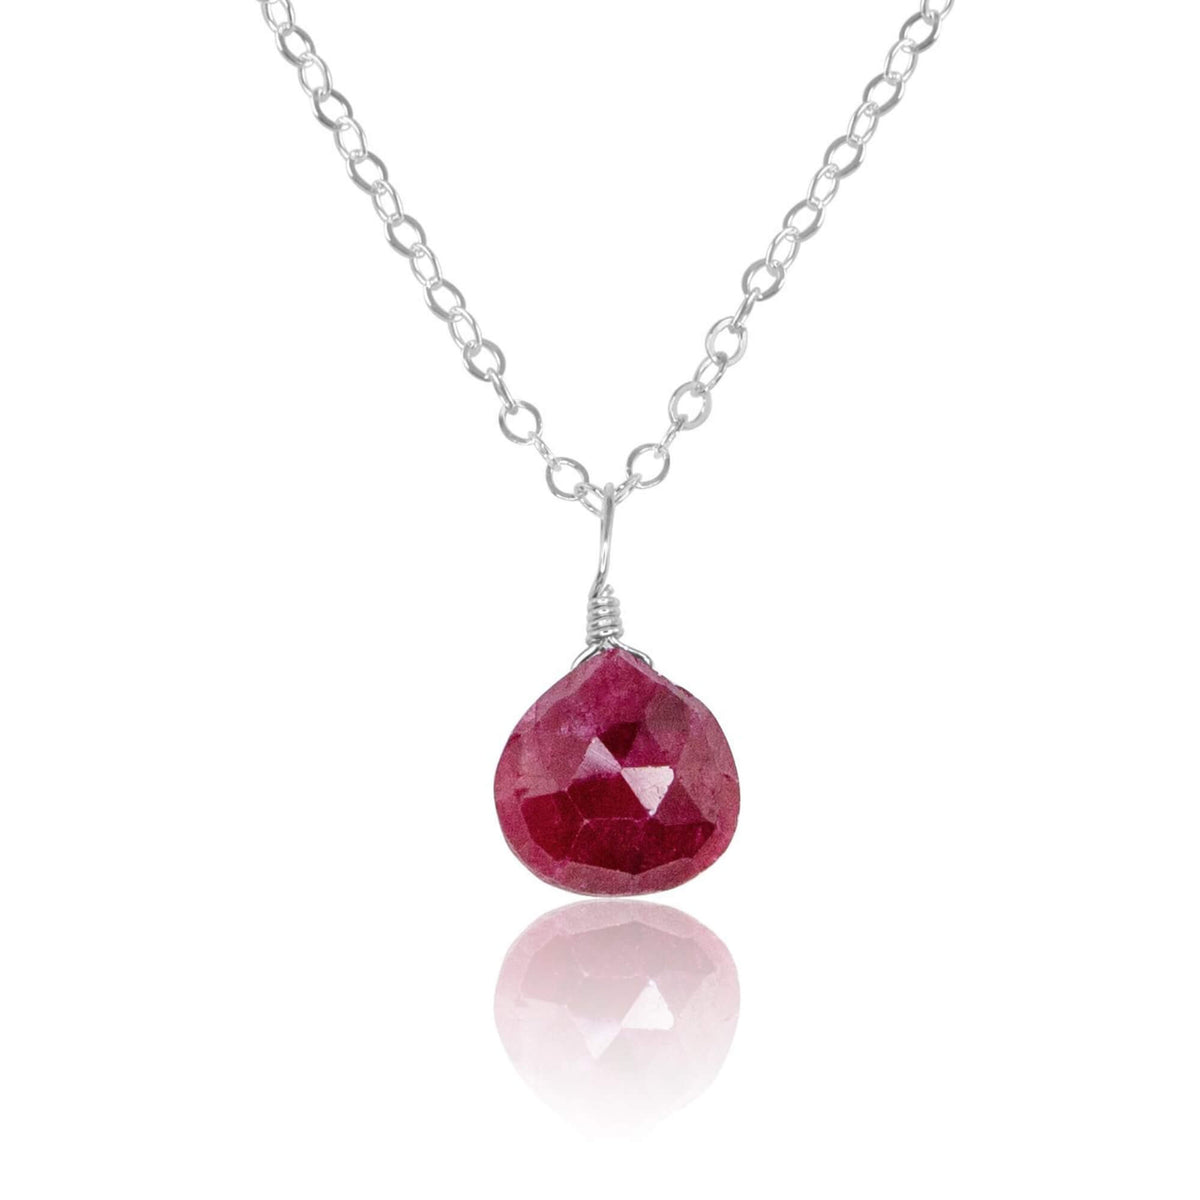 Teardrop Necklace - Ruby - Sterling Silver - Luna Tide Handmade Jewellery